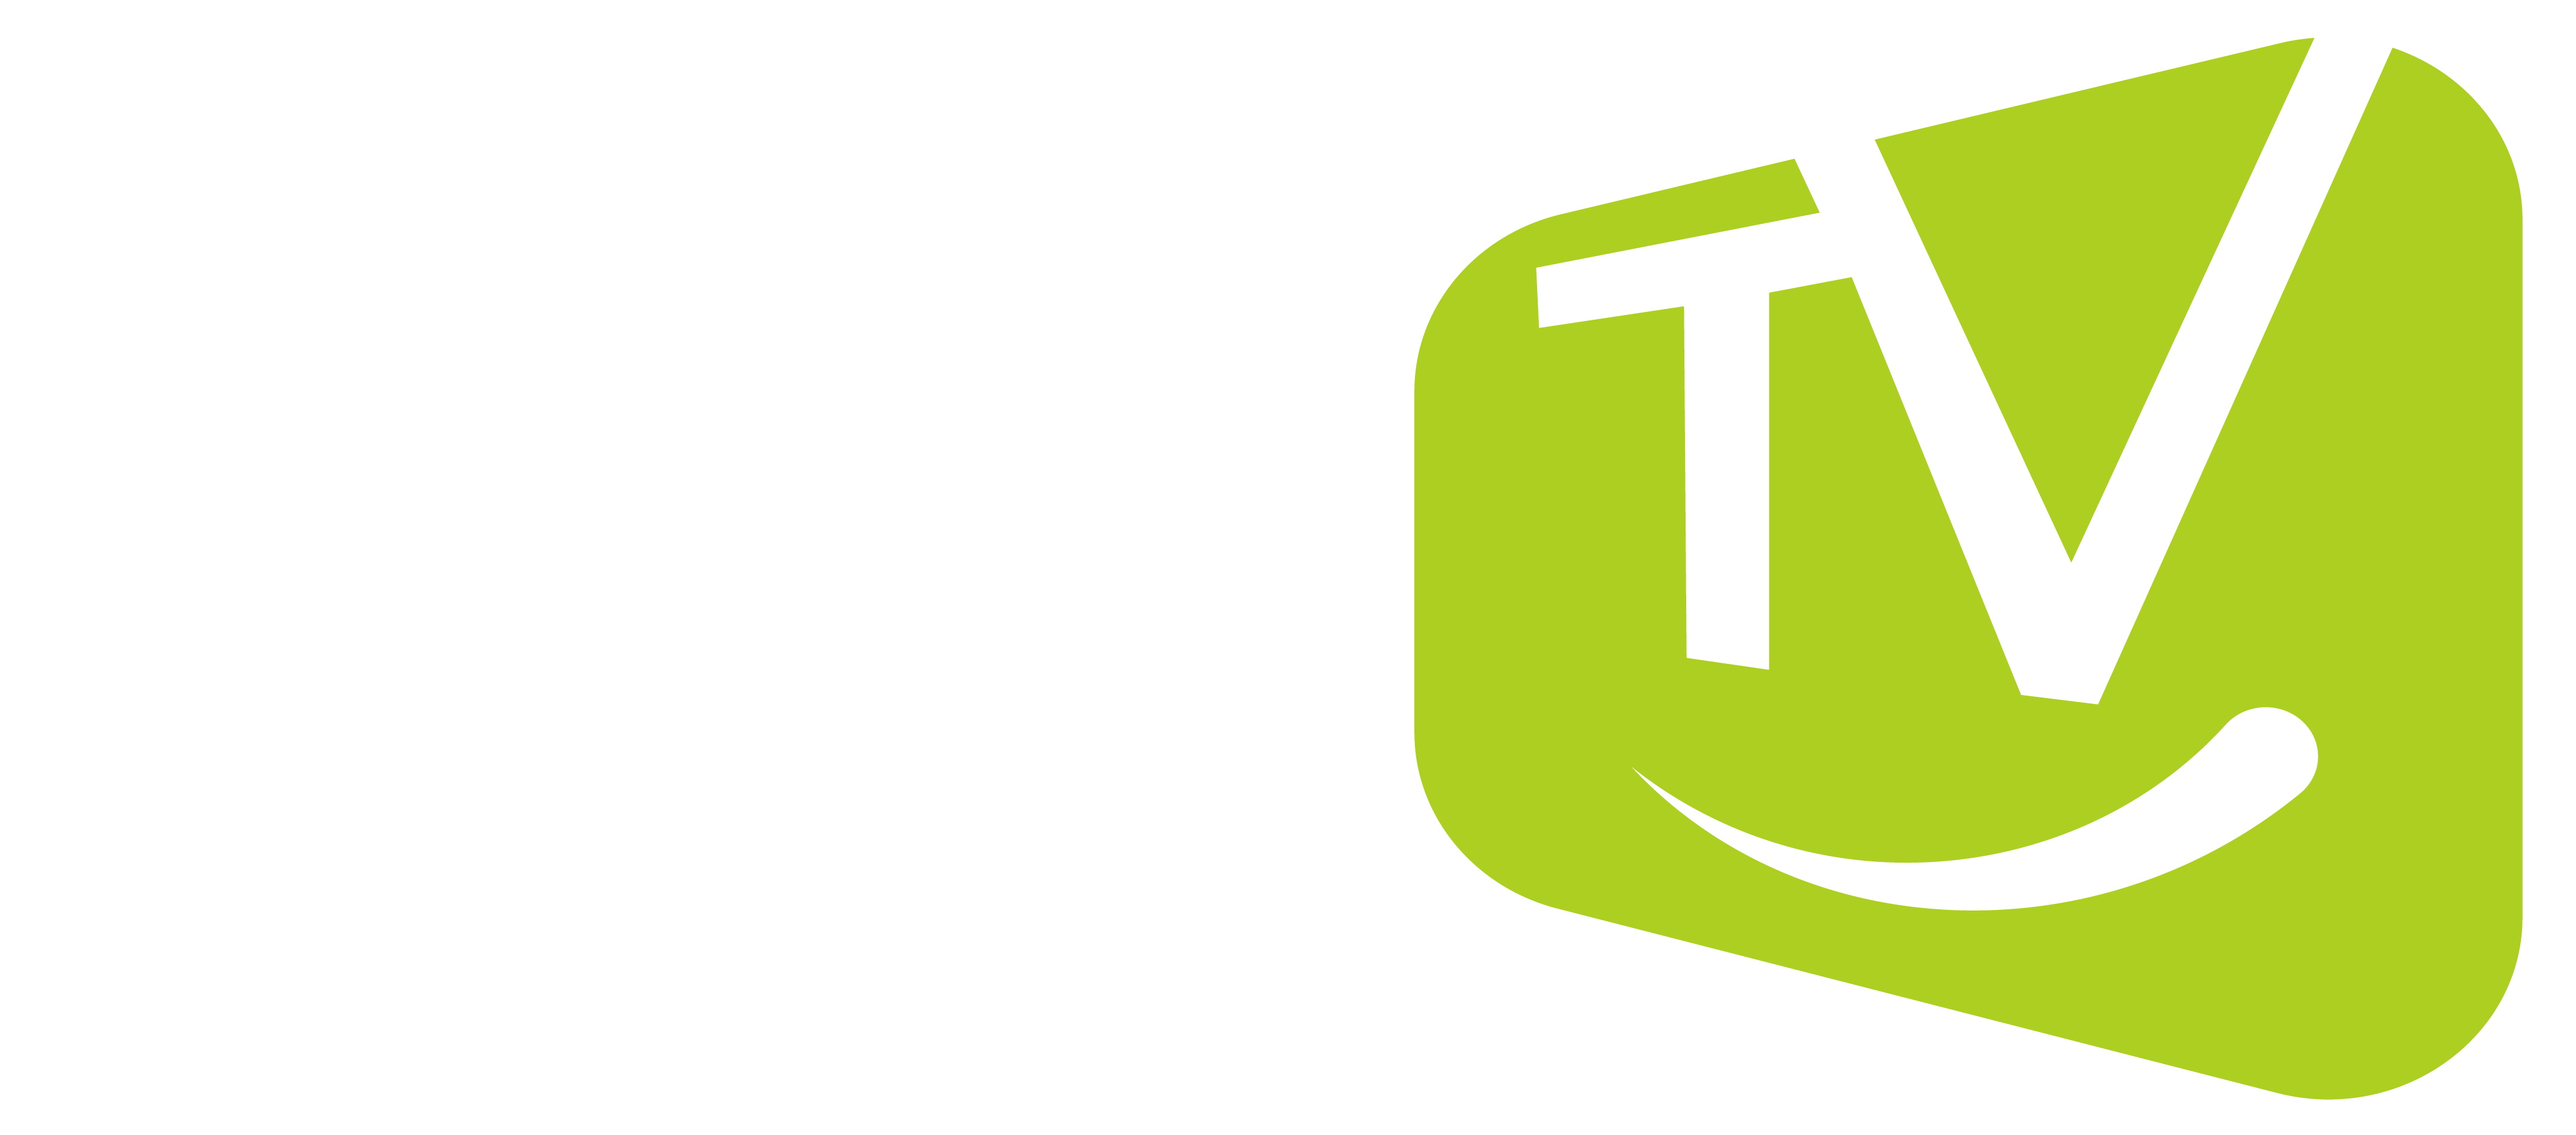 Logo MiTV